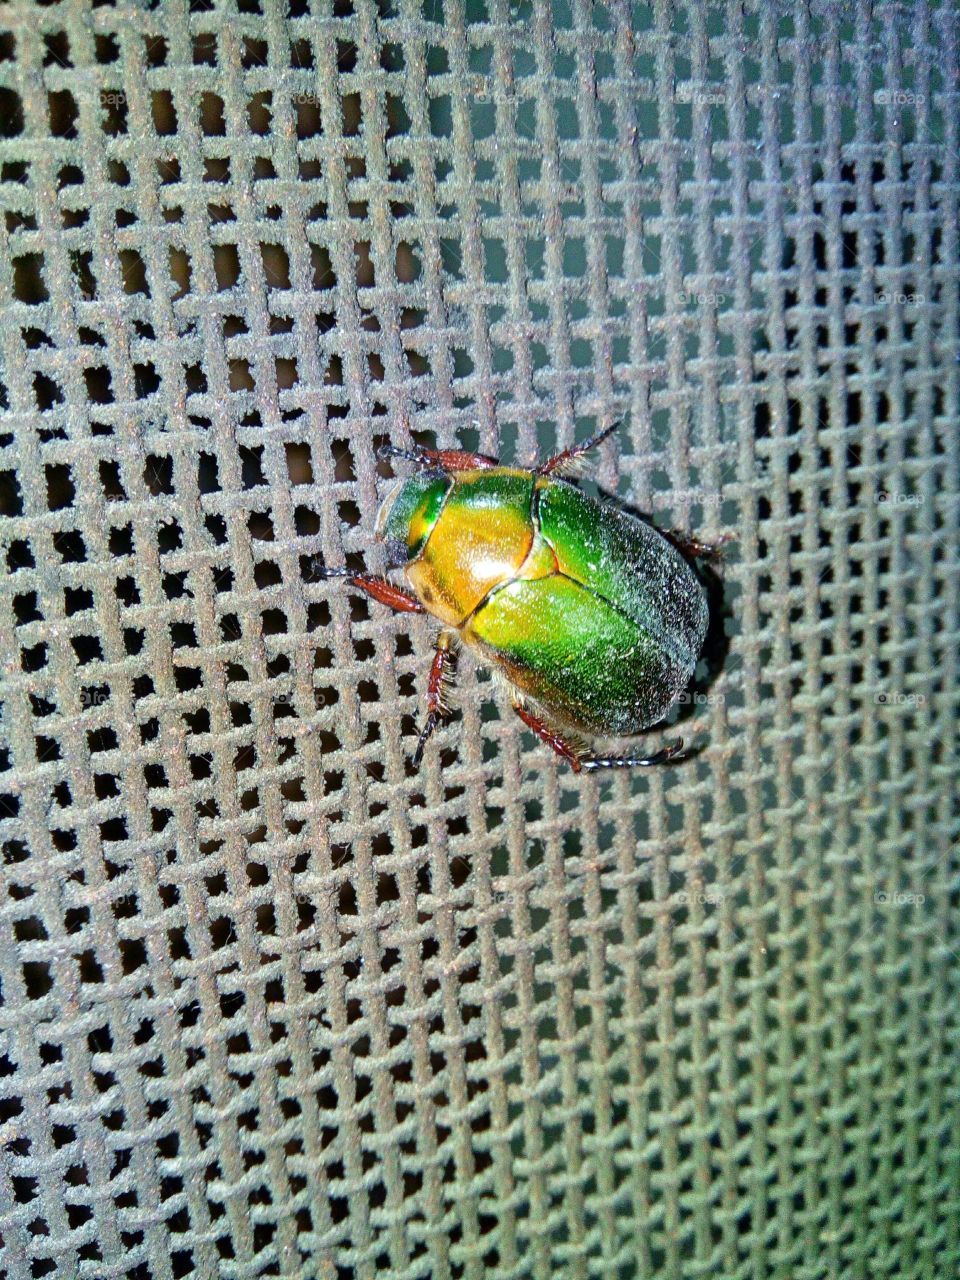 A Bug.